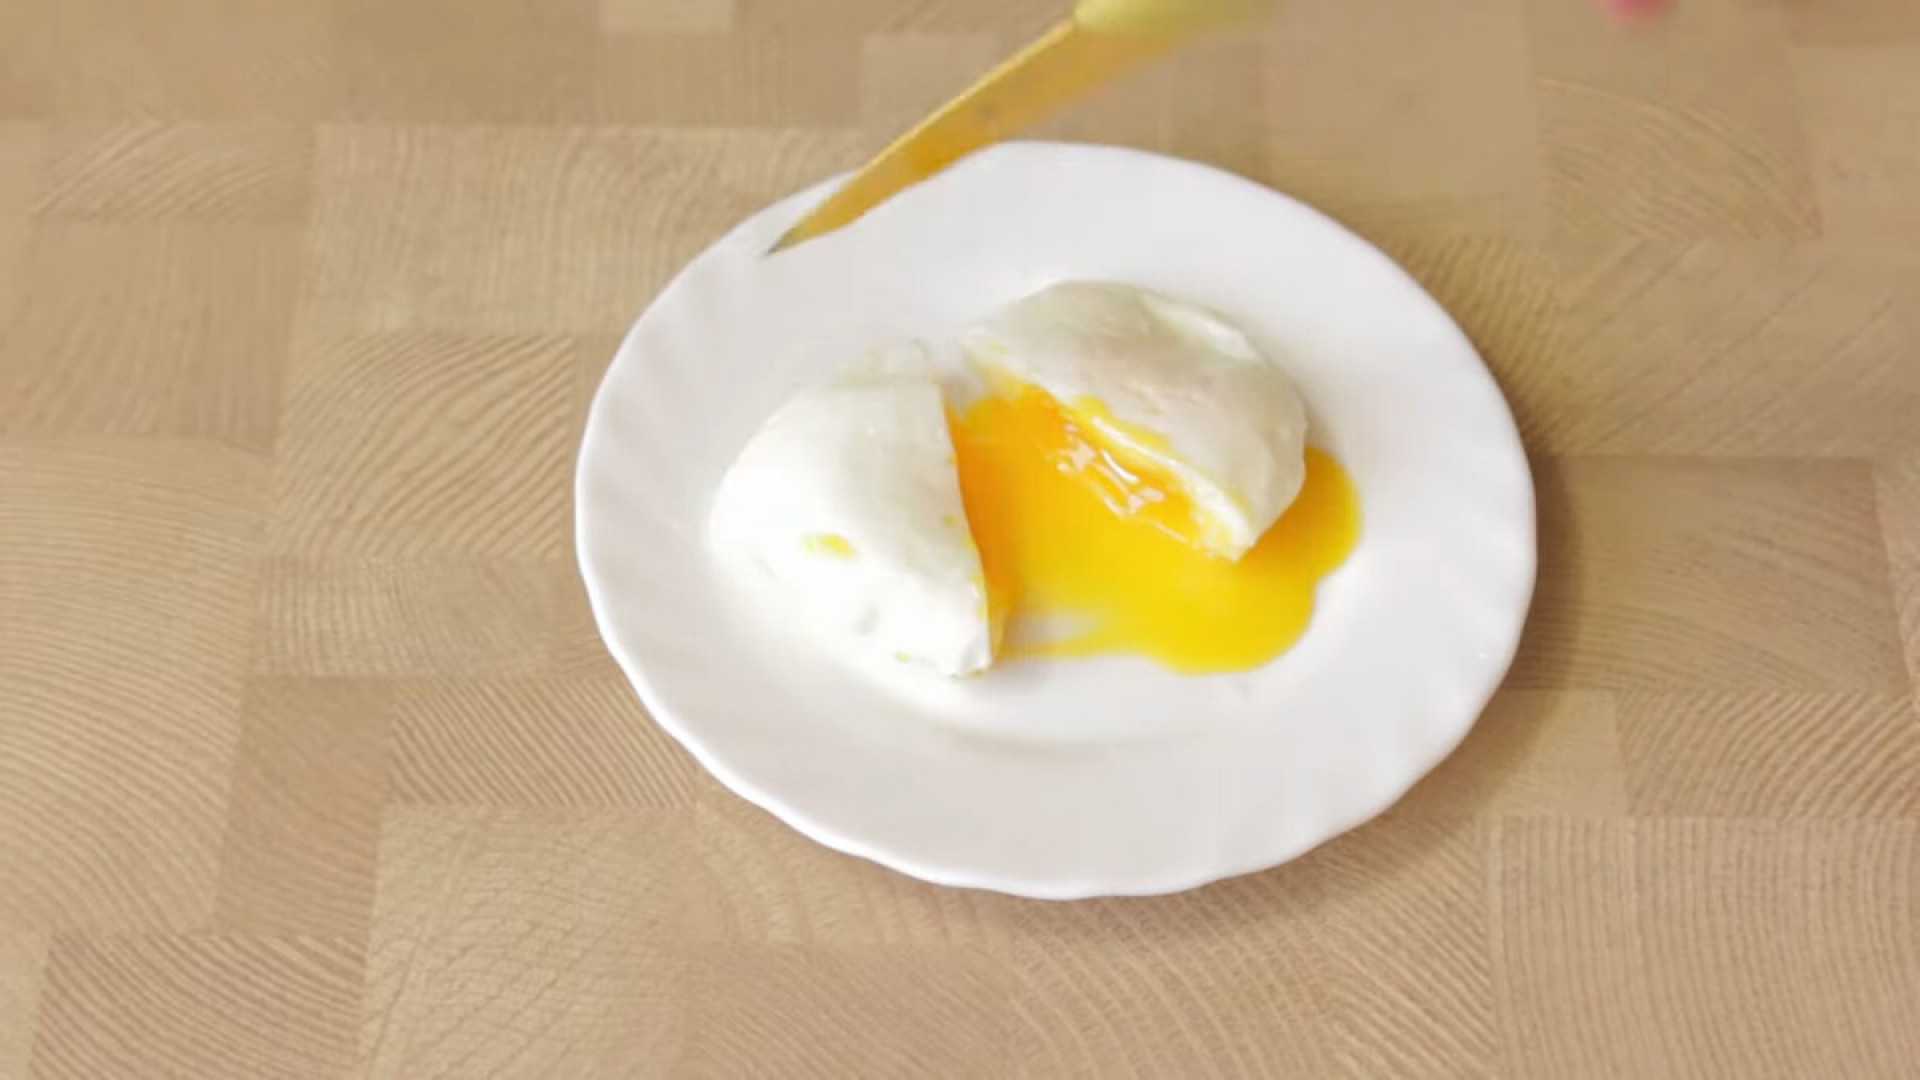 Рецепт яйцо пашот в домашних условиях кастрюле. Варка яиц пашот. Яйца сваренные пашот. Яйцо пашот без скорлупы. Способ приготовления яйца пашот.